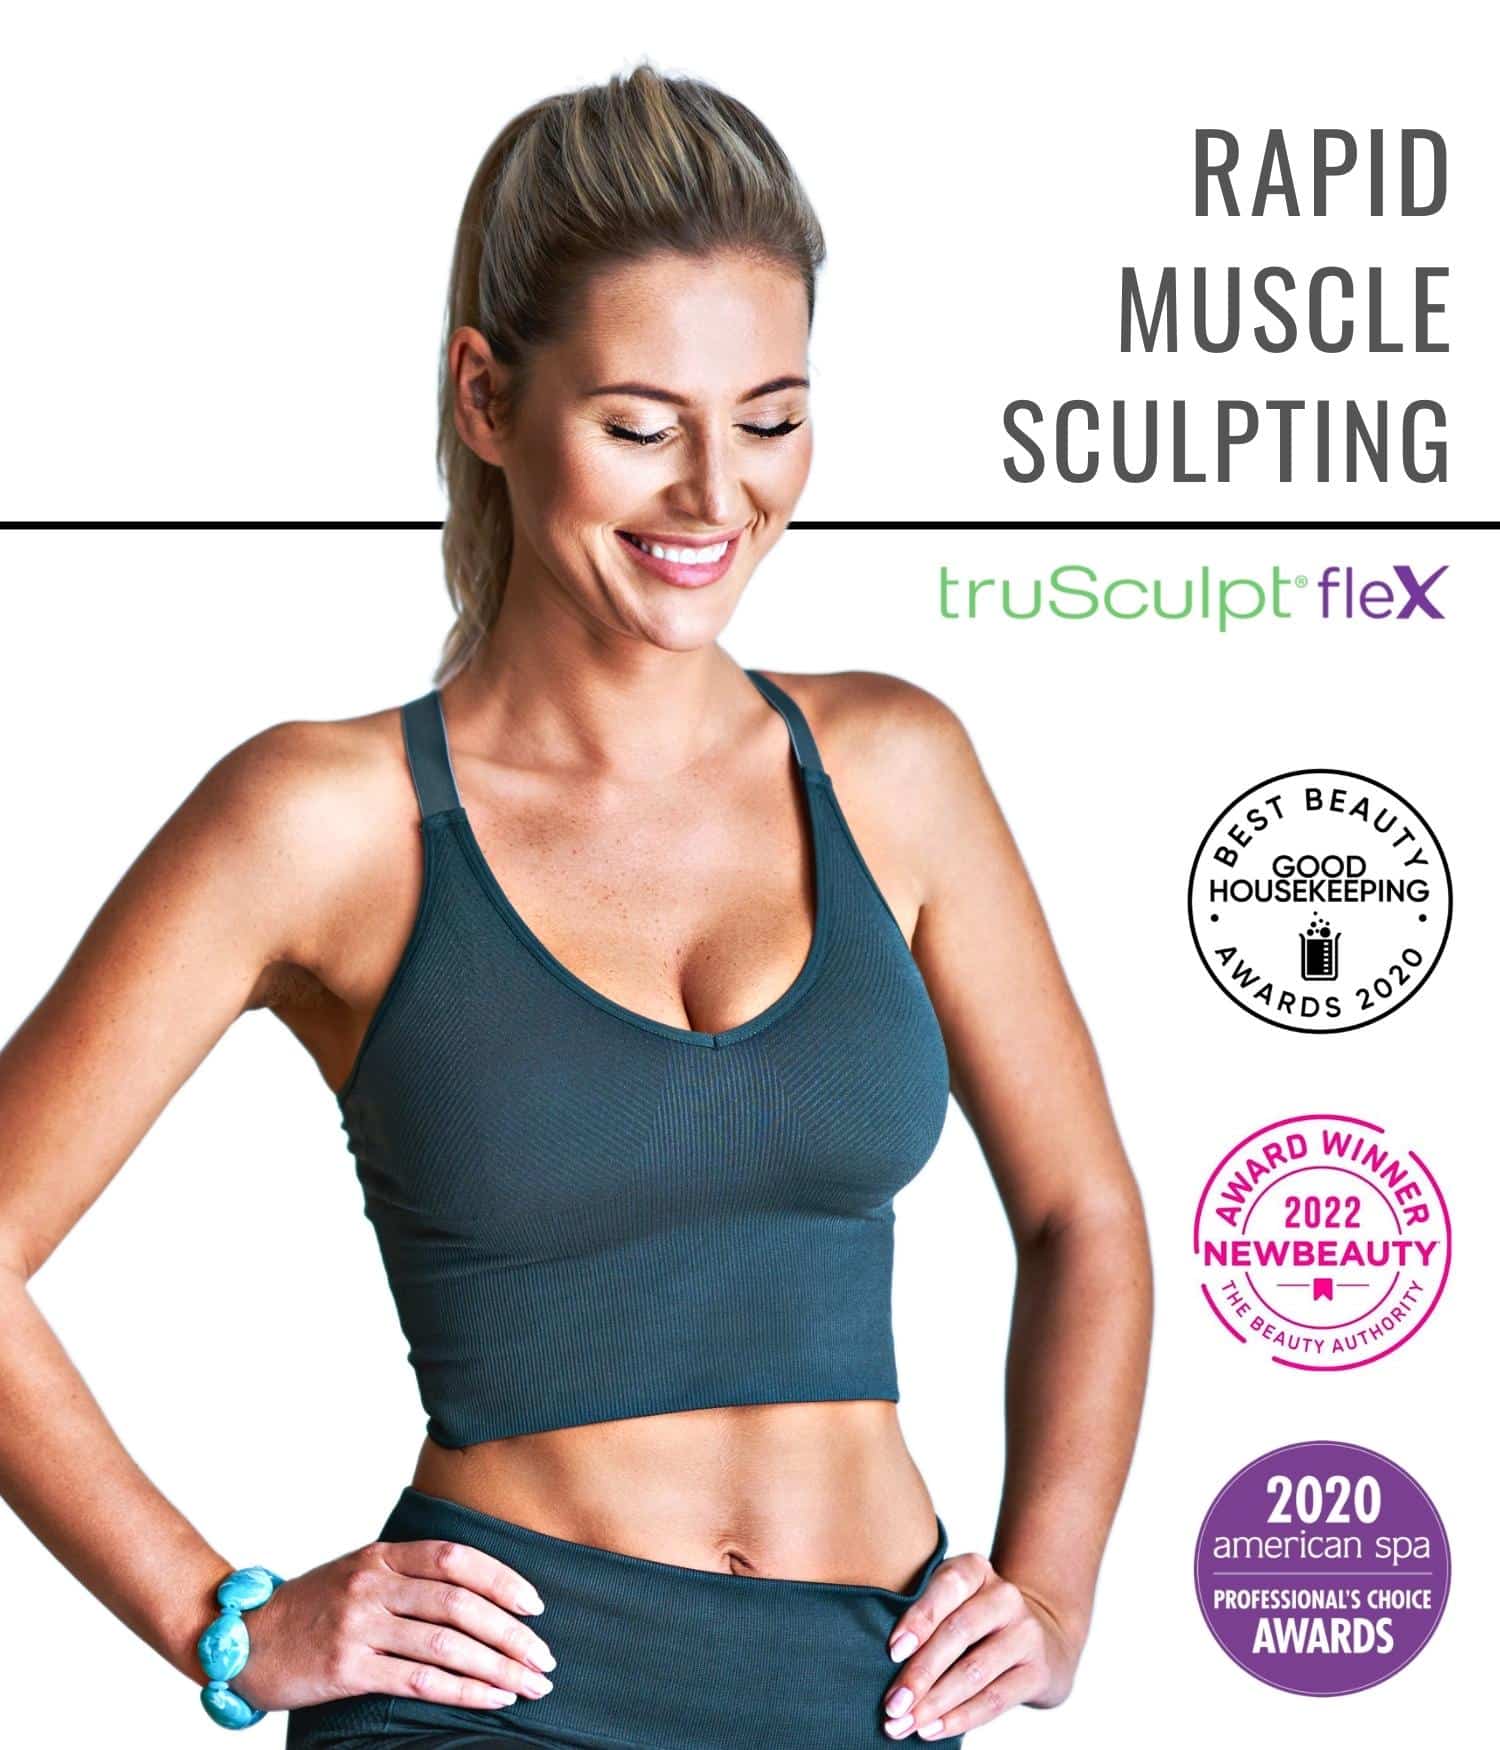 Portrait of a fit woman promoting TruSculpt Flex treatment.